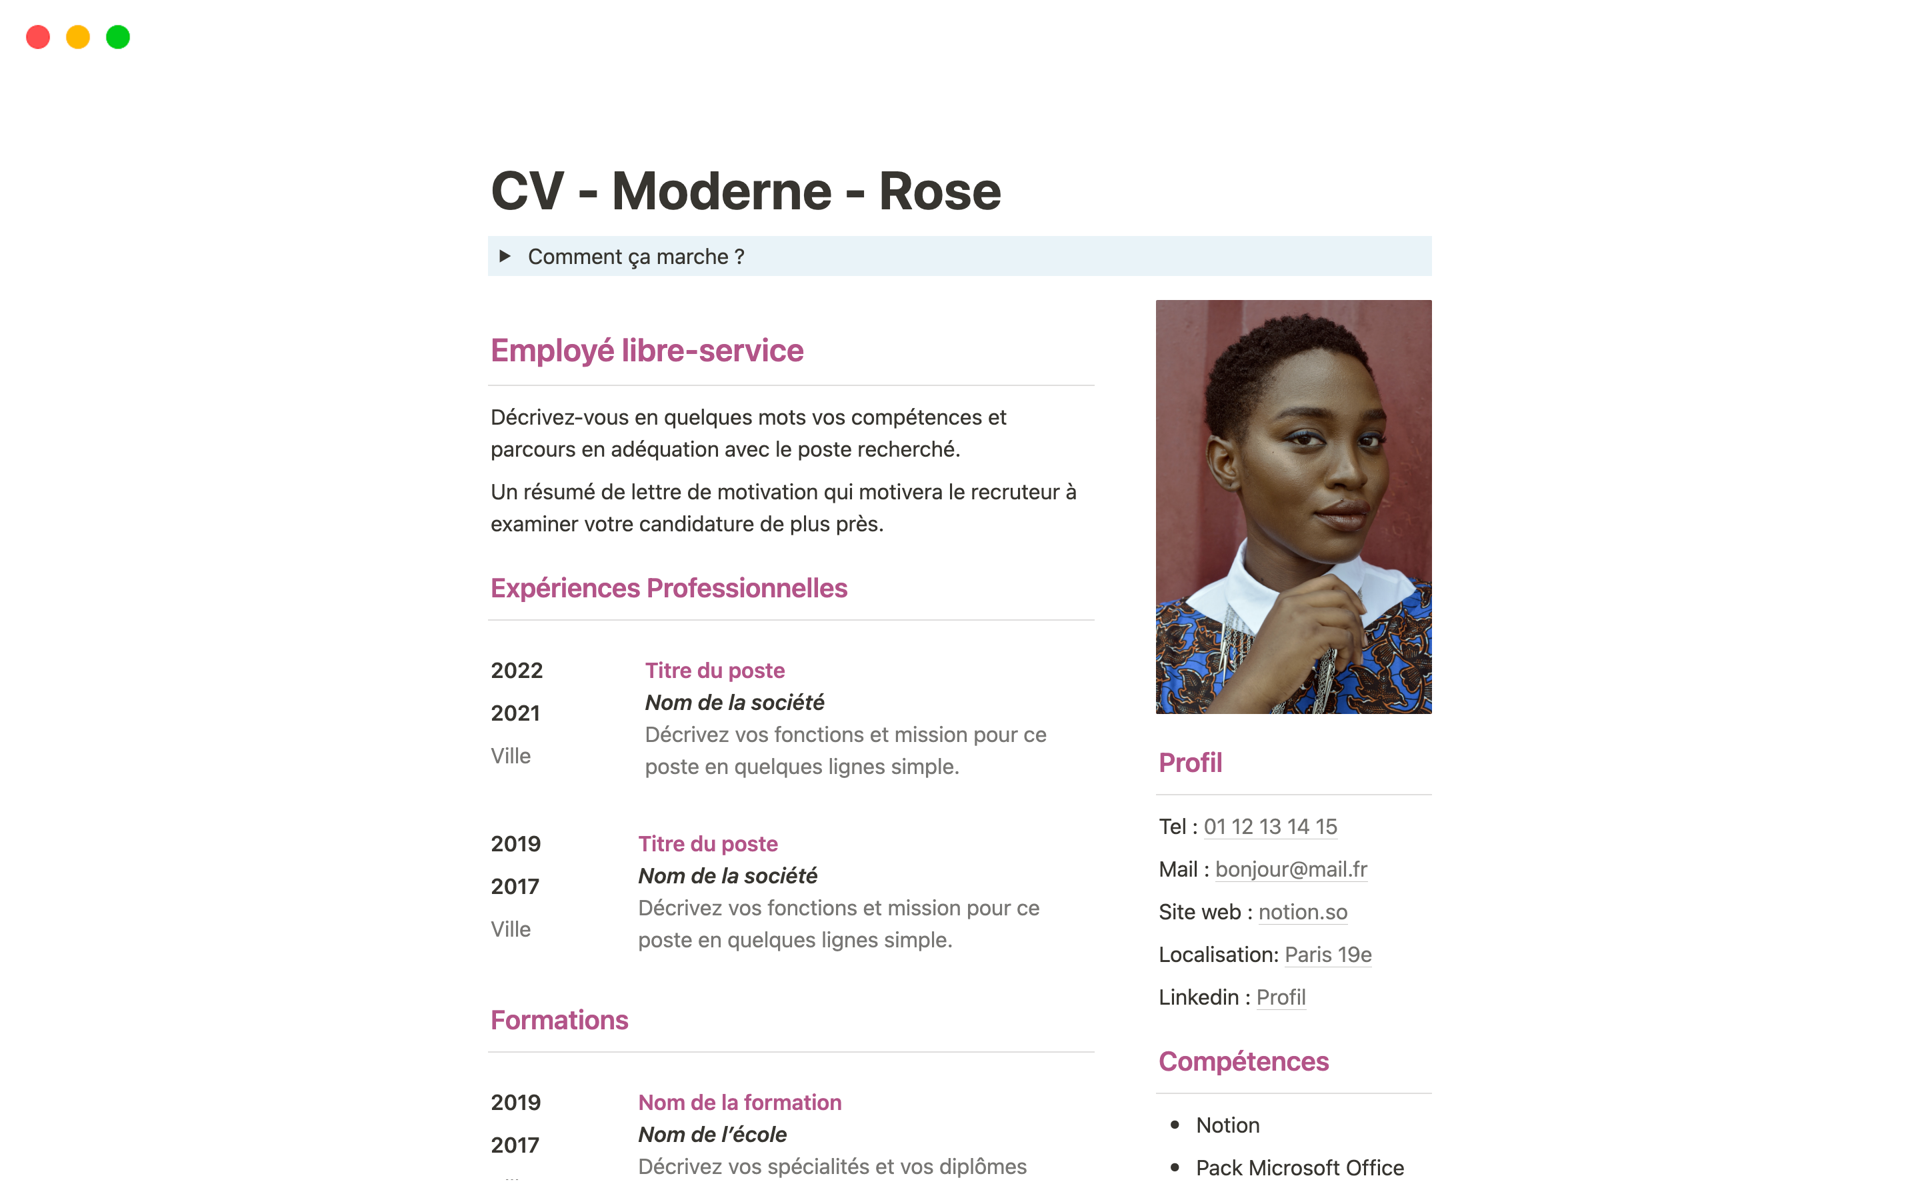 Vista previa de plantilla para CV - Moderne - Rose